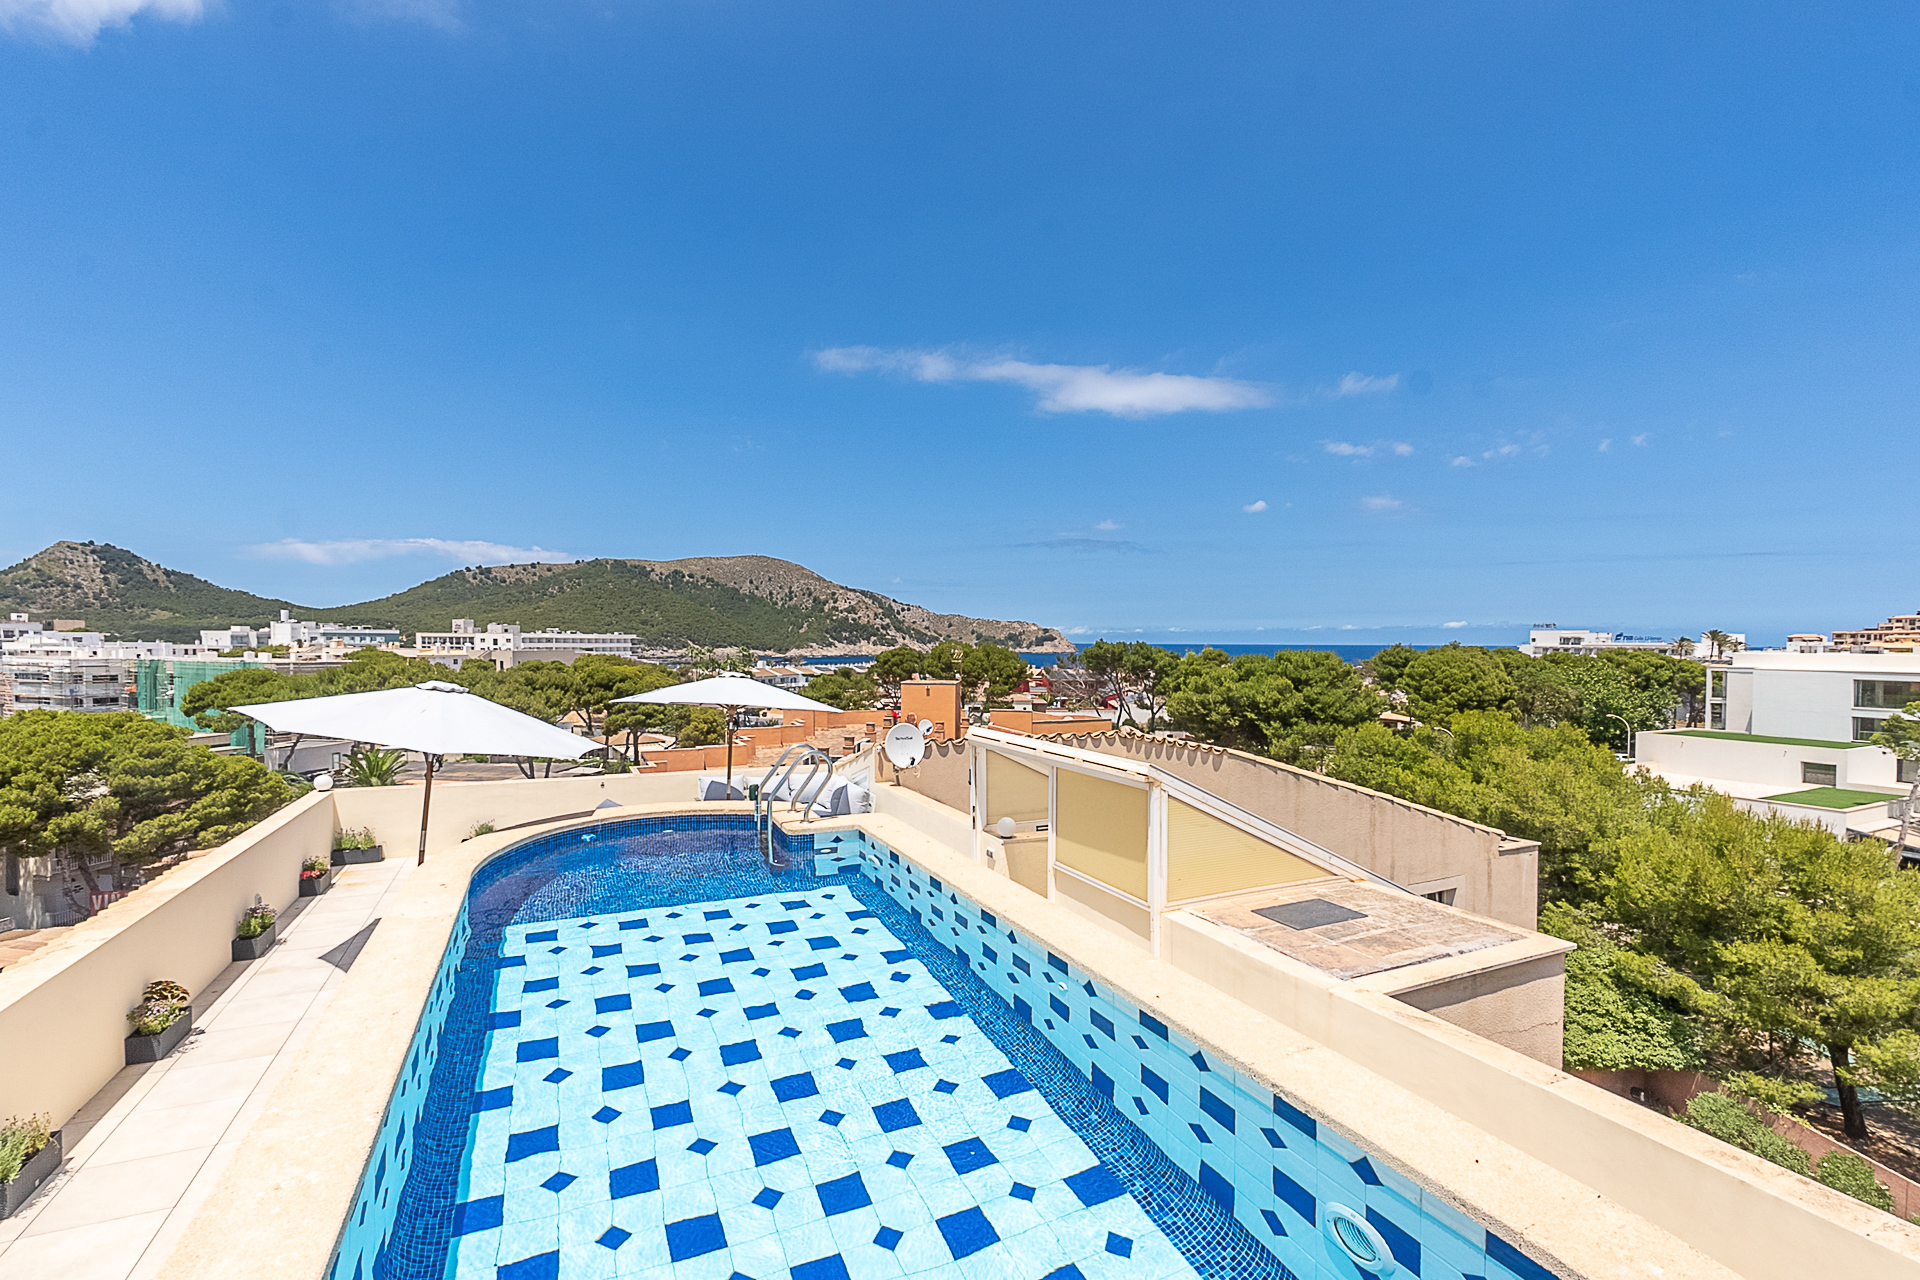 Fantástico ático de 2 dormitorios con azotea y piscina privada cerca del mar, 07590 Cala Ratjada (España), Ático